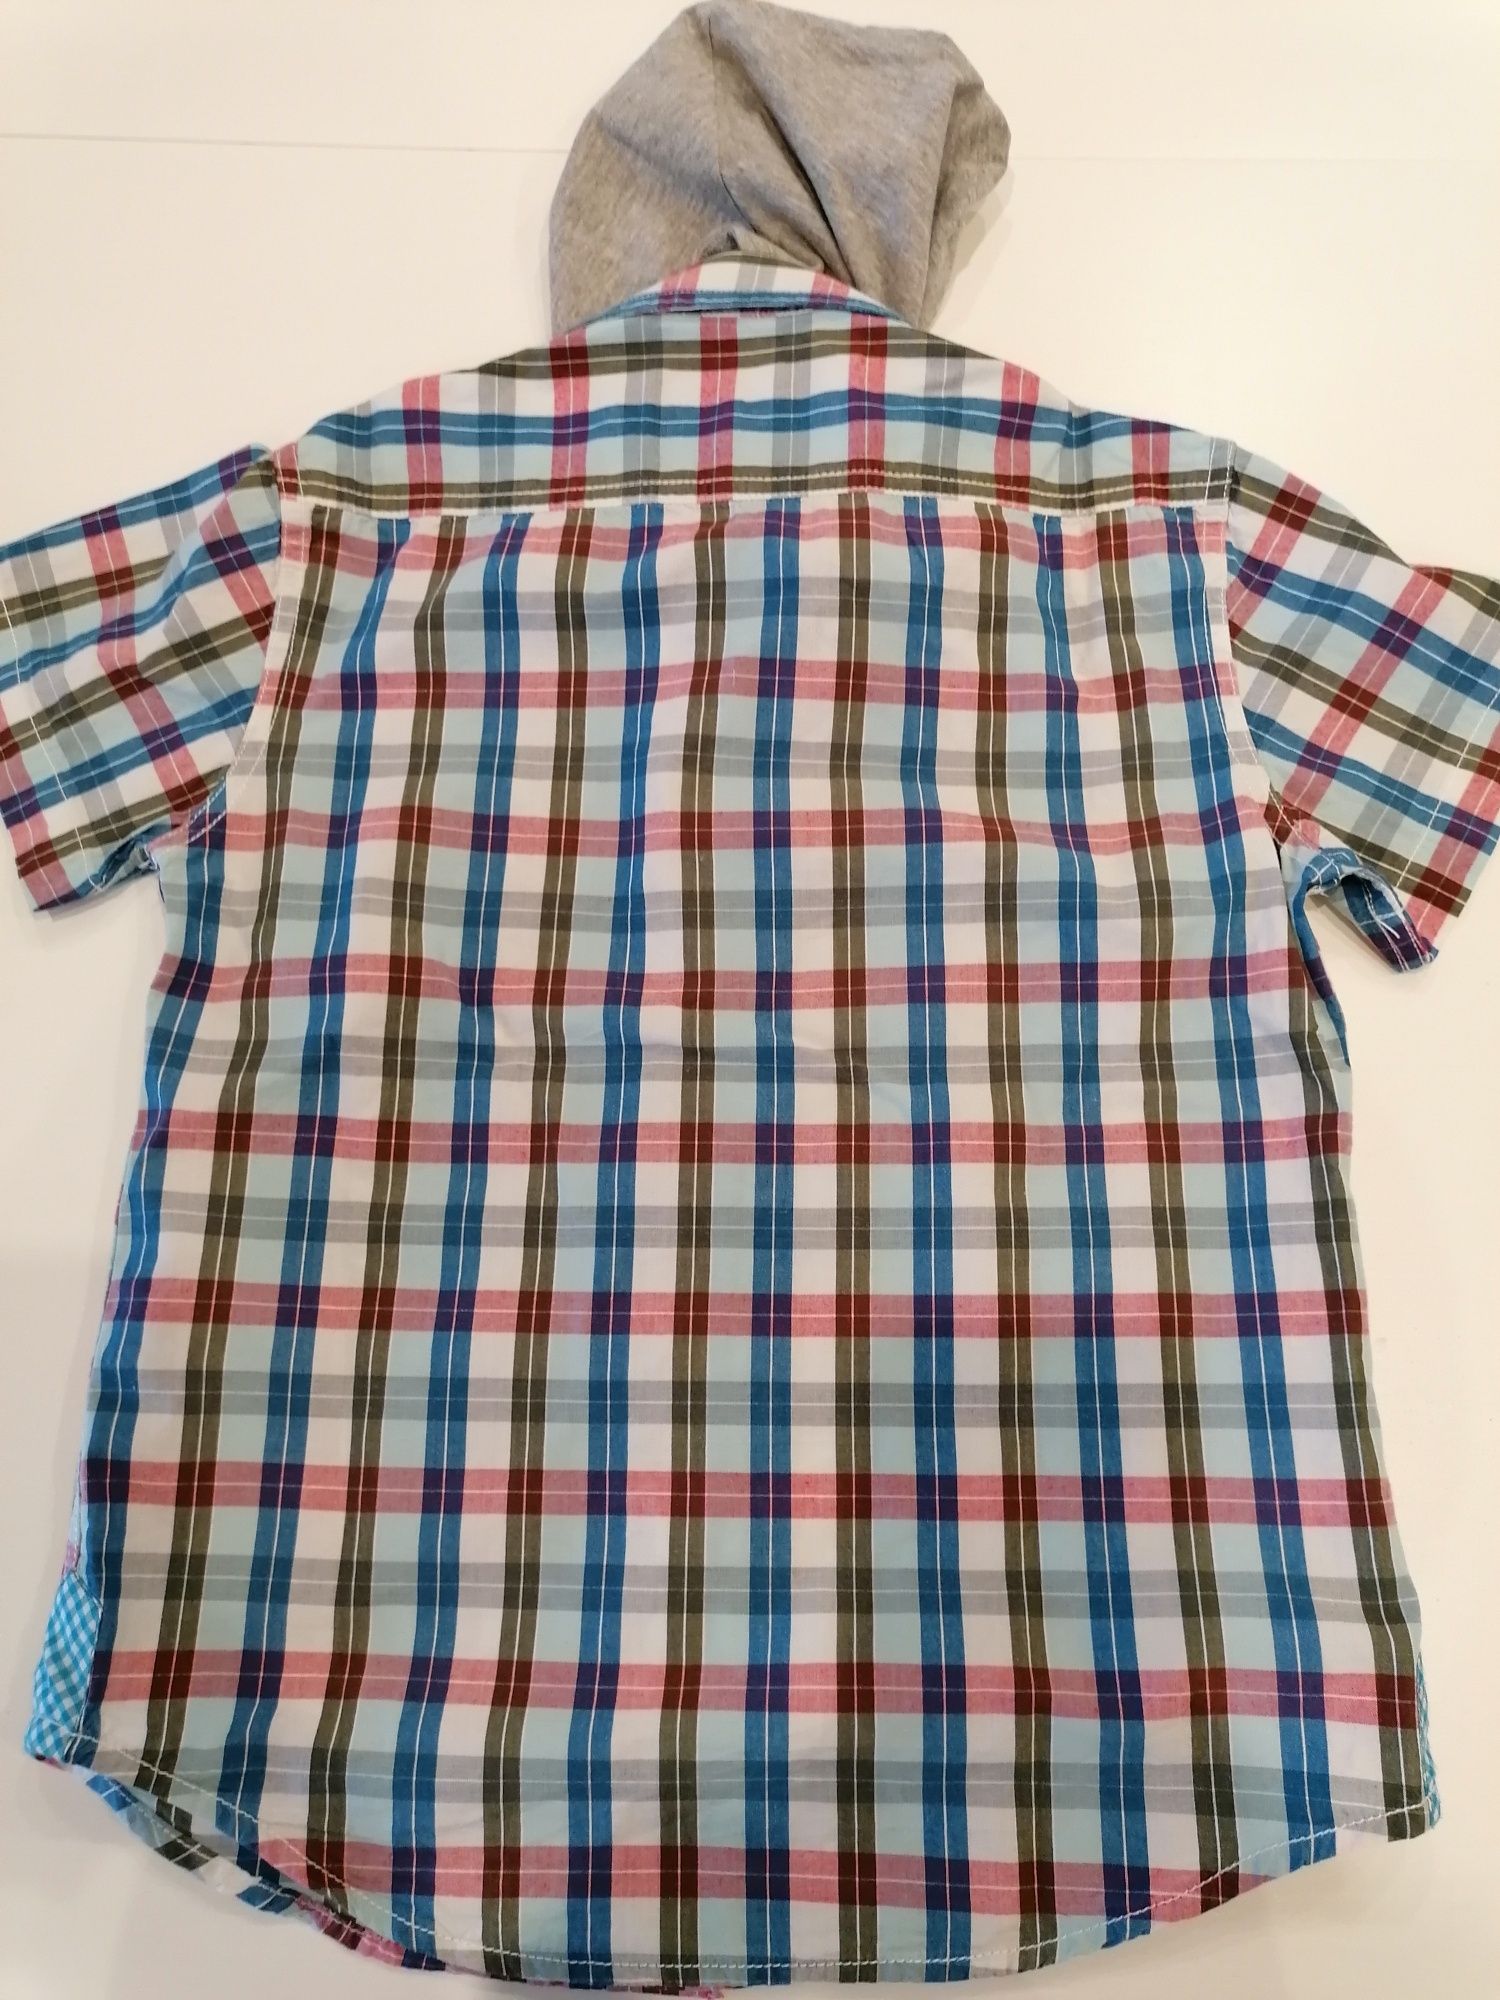 Camisa menino, 8 anos